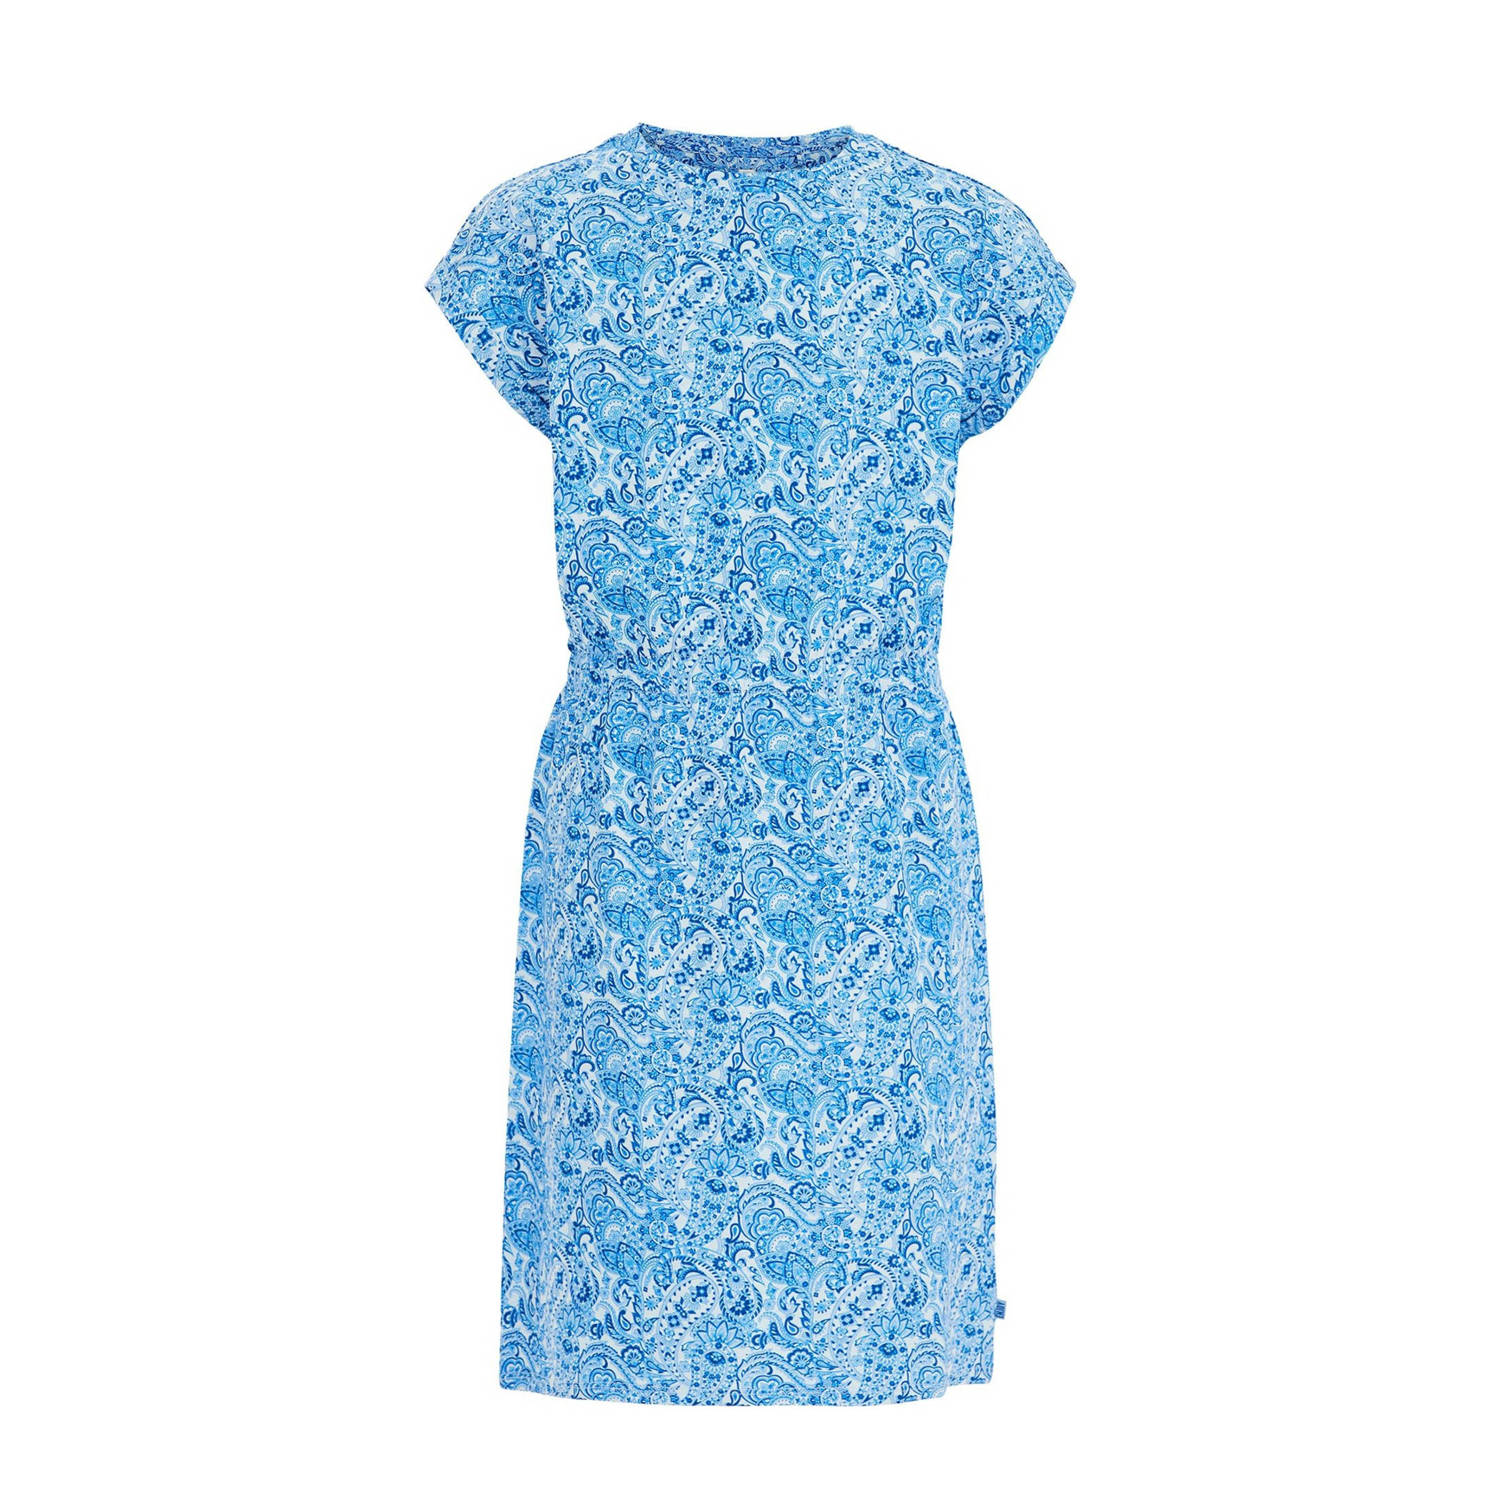 WE Fashion jurk met paisleyprint blauw wit Meisjes Stretchkatoen Ronde hals 110 116